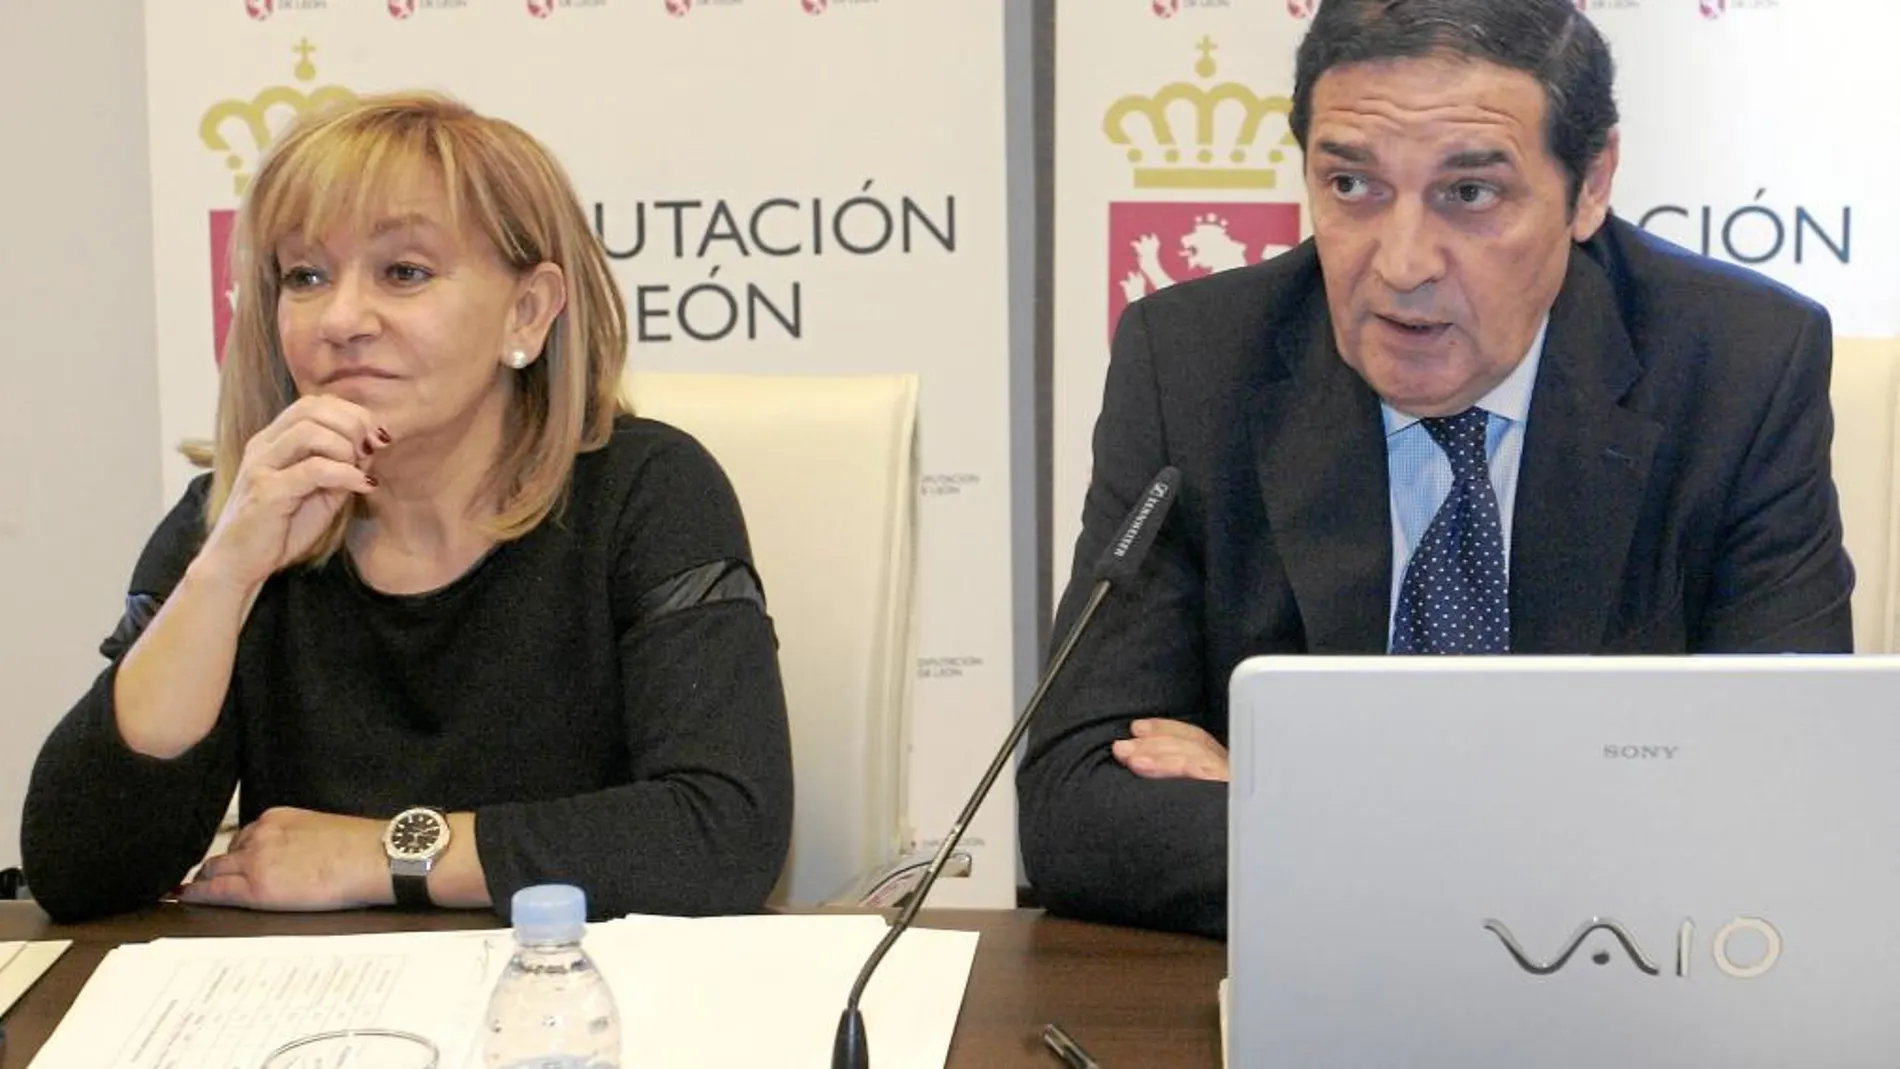 El consejero de Sanidad, Antonio María Sáez Aguado, y la presidenta de la Diputación de León, Isabel Carrasco